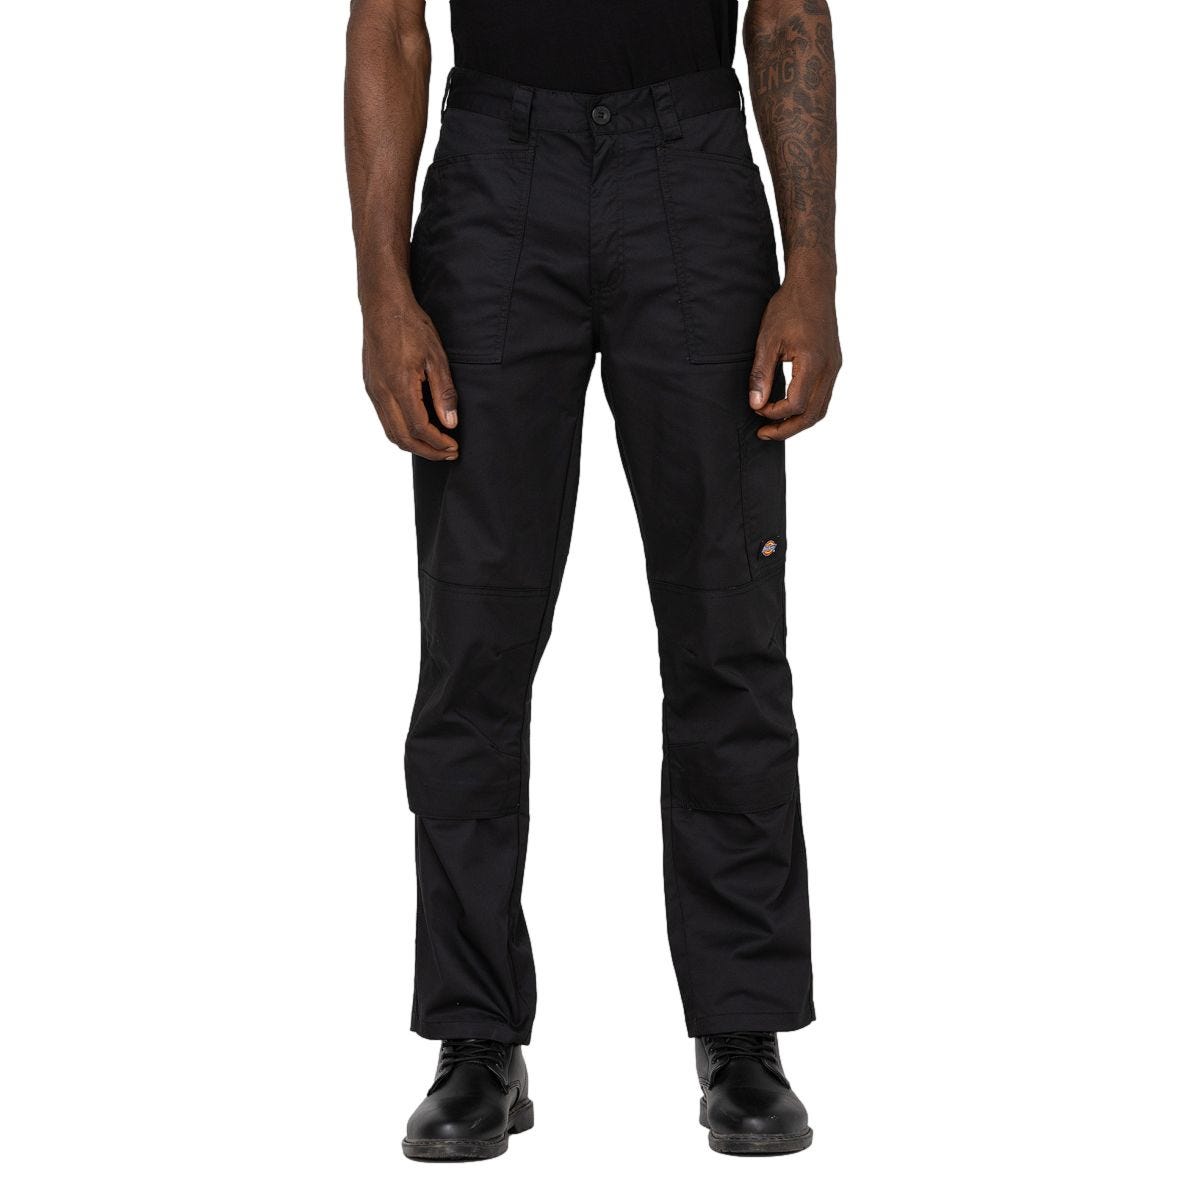 Pantalon de travail Action Flex noir - Dickies - Taille 36 0